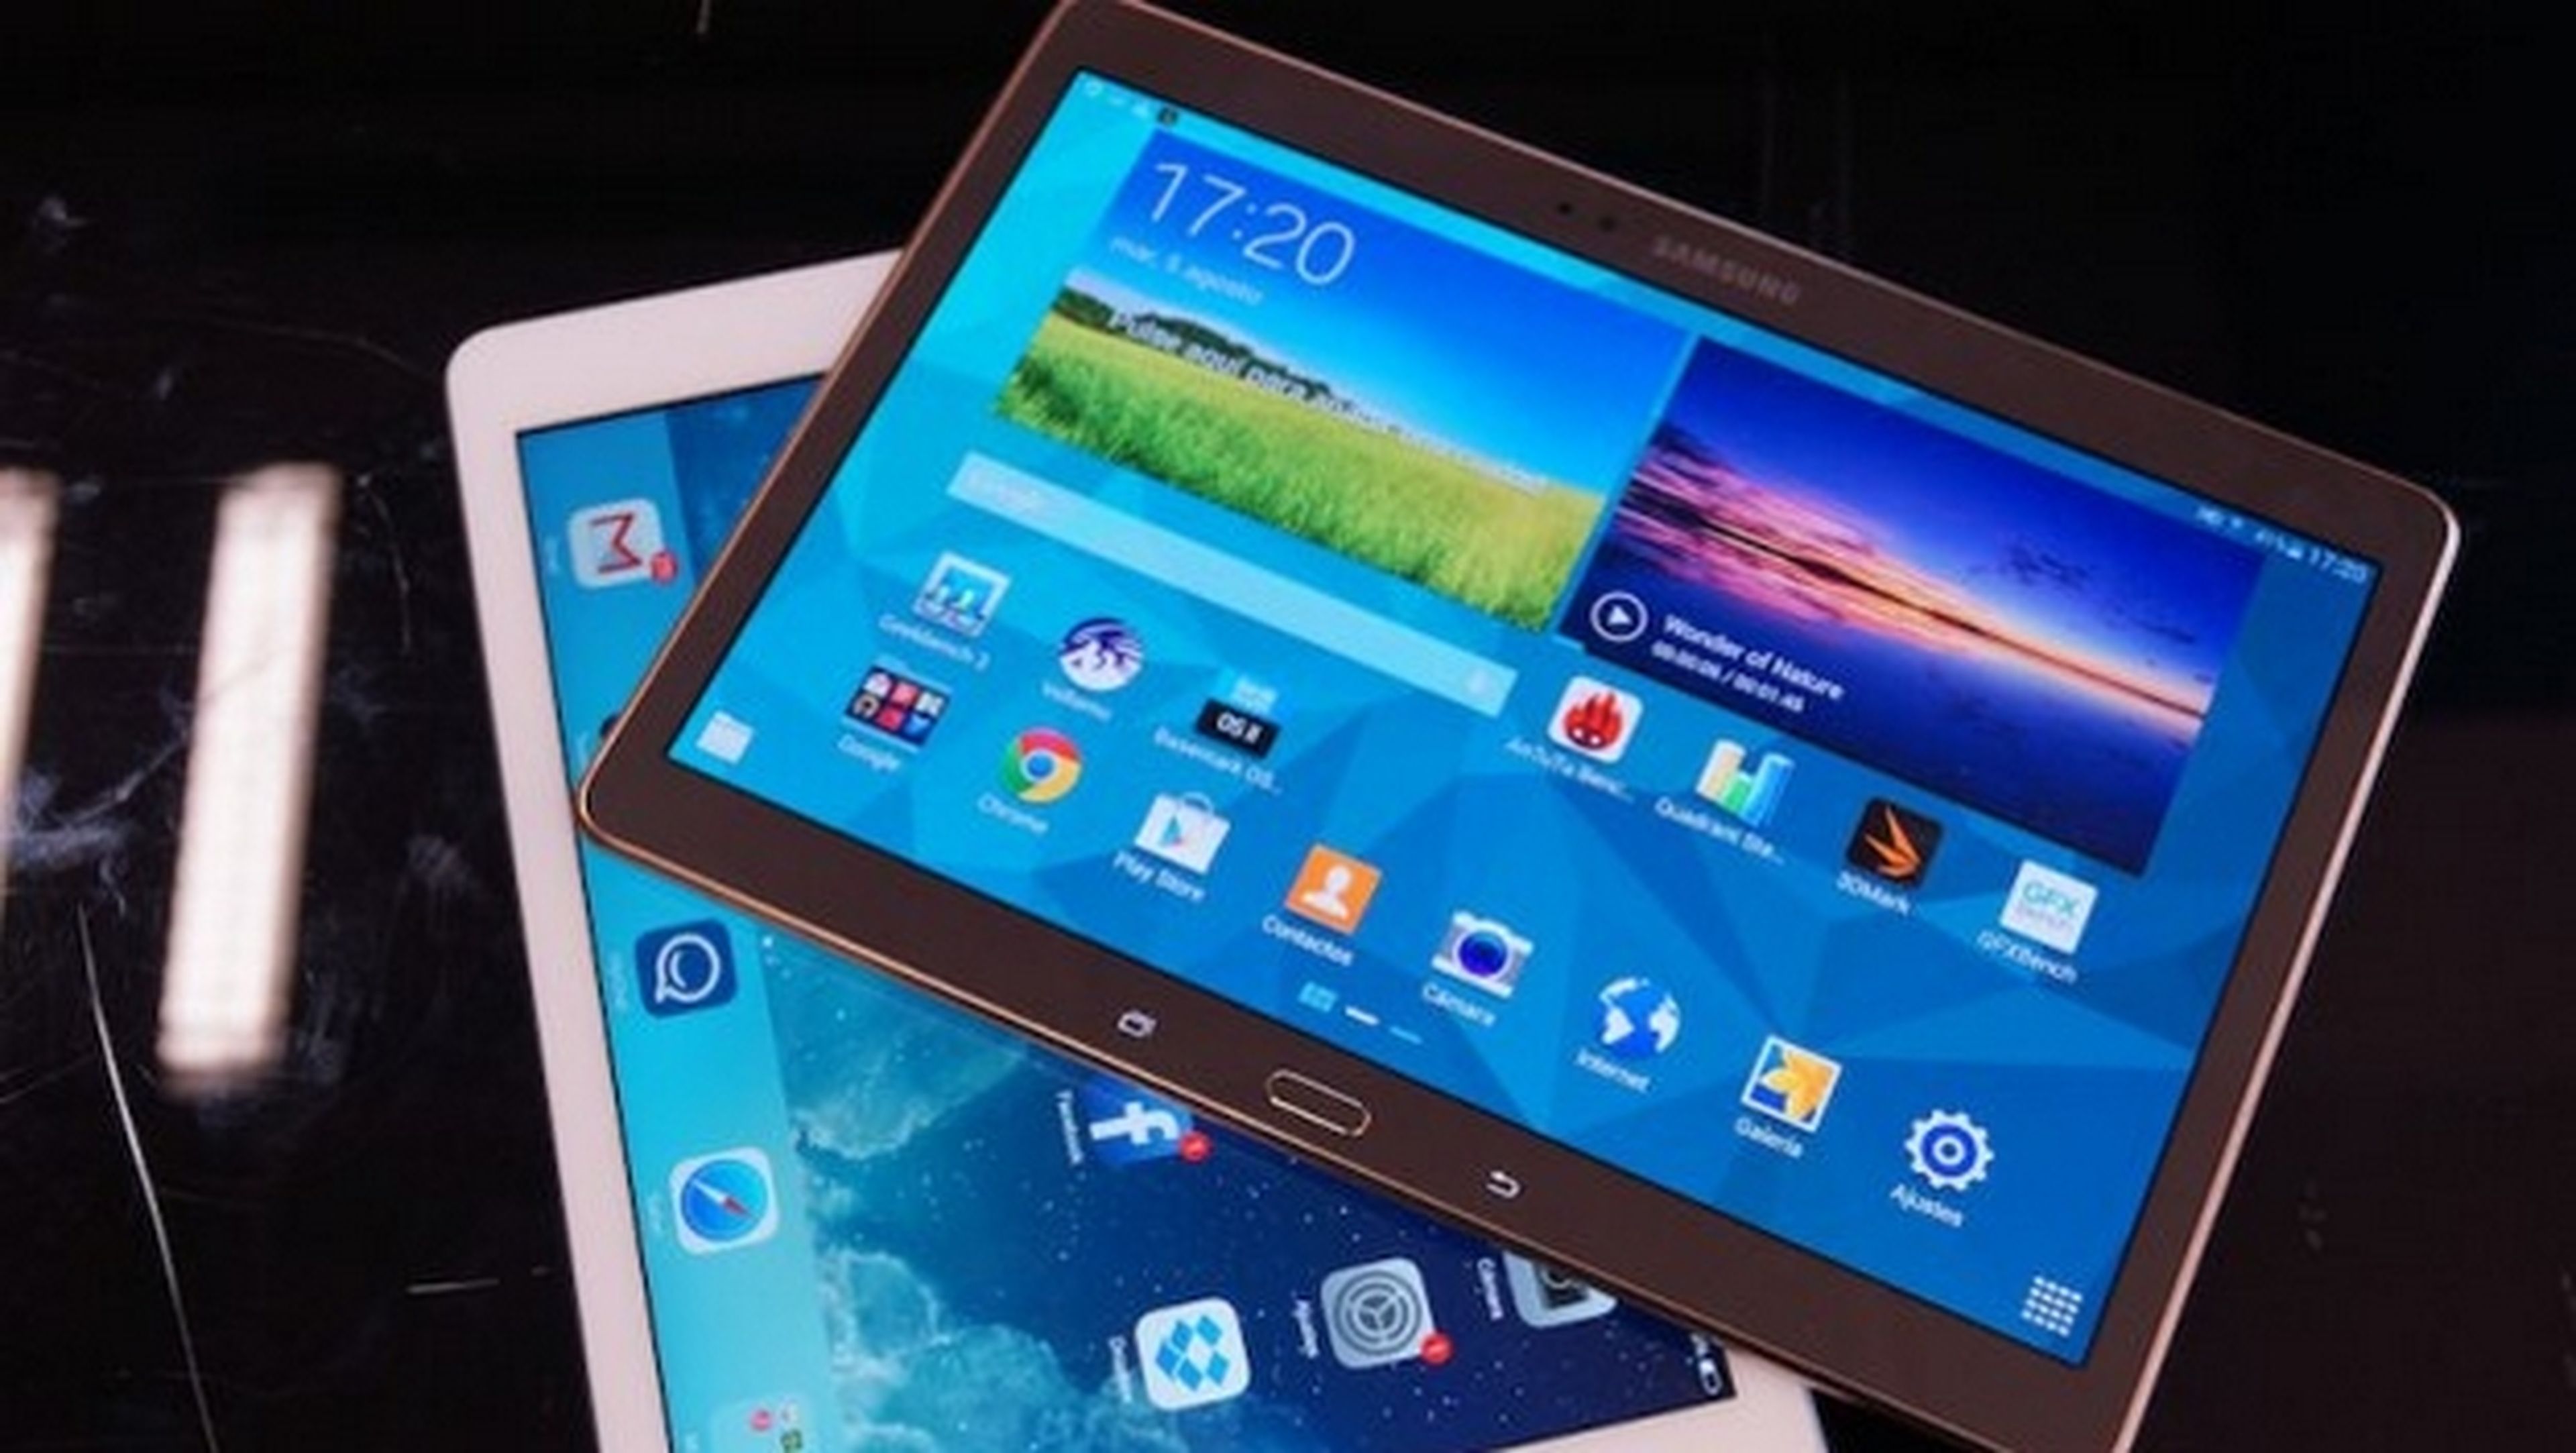 SecuTABLET de Blackberry, IBM y Samsung, la tablet más segura.